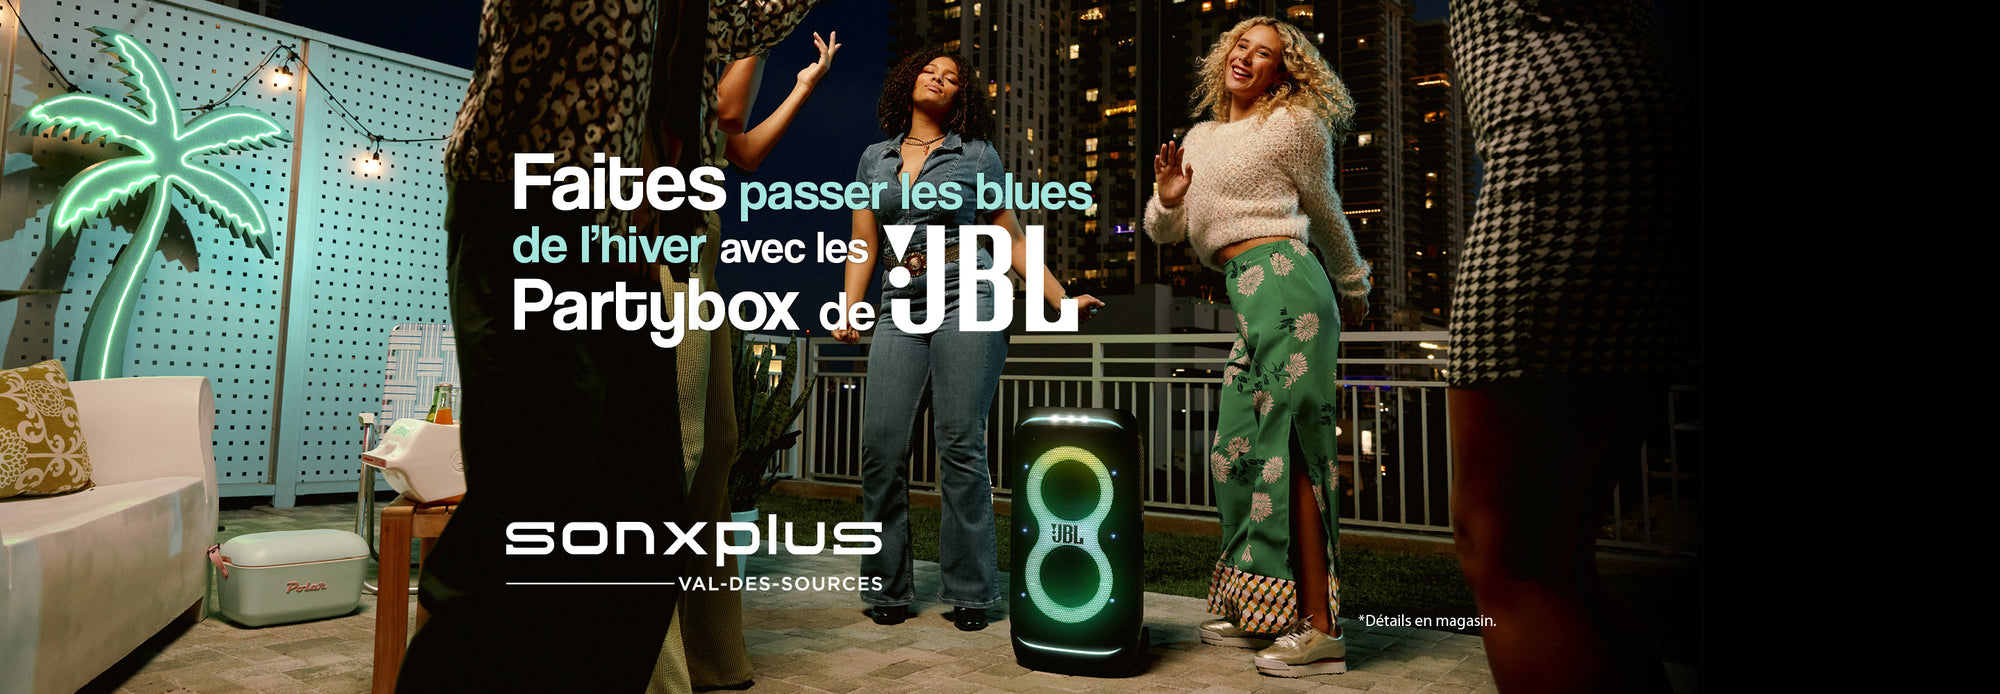 Promotion Partybox JBL | SONXPLUS Val-des-Sources